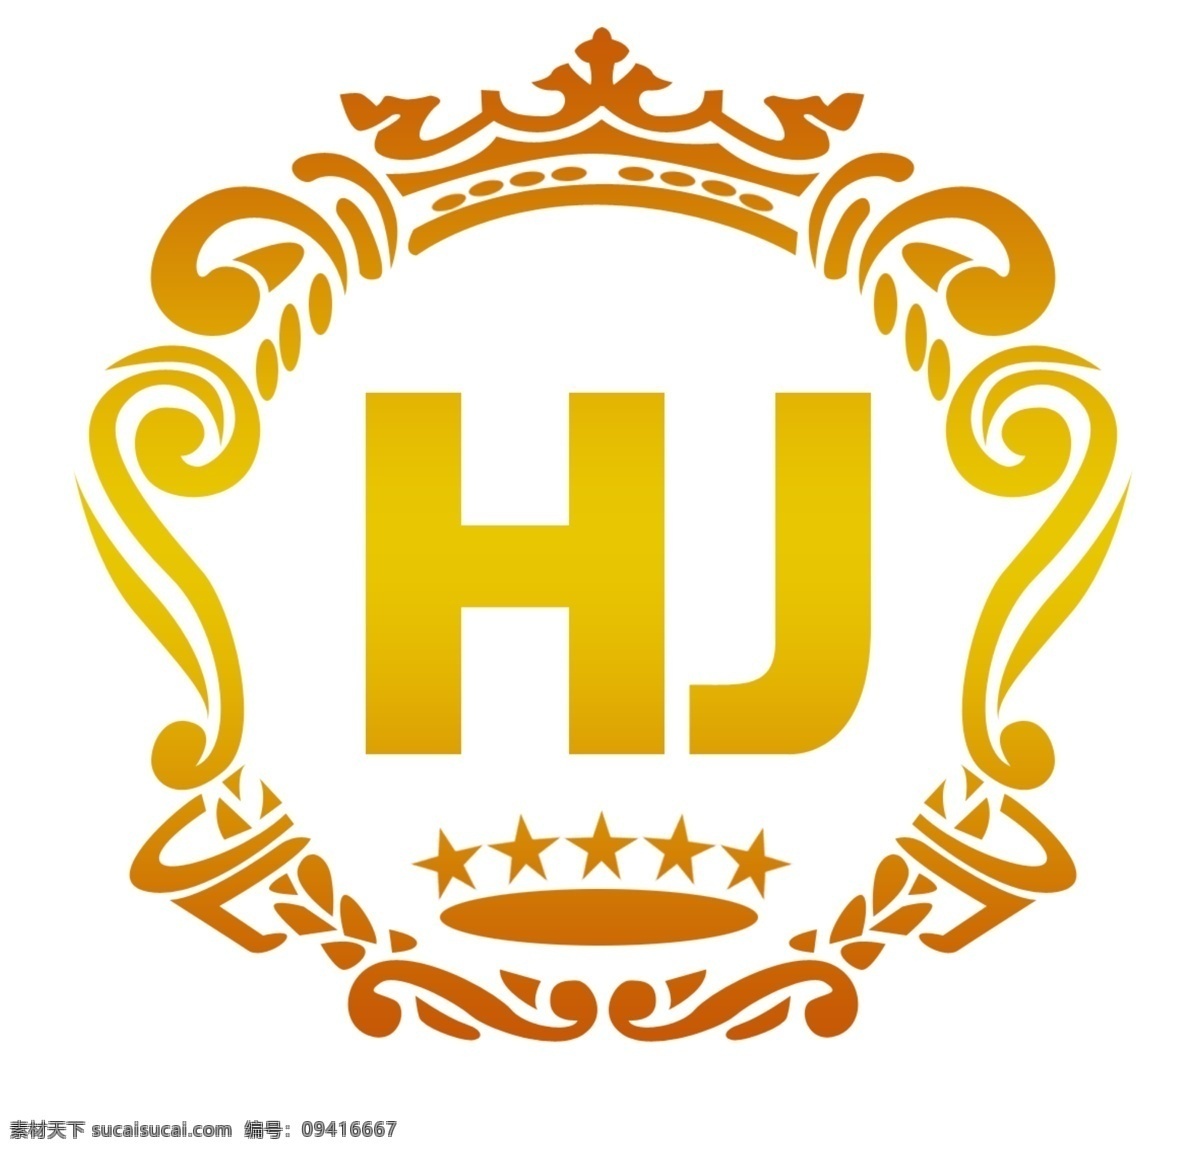 皇爵标志 hj标志 沐足标志 会所标志 皇冠标志 logo设计